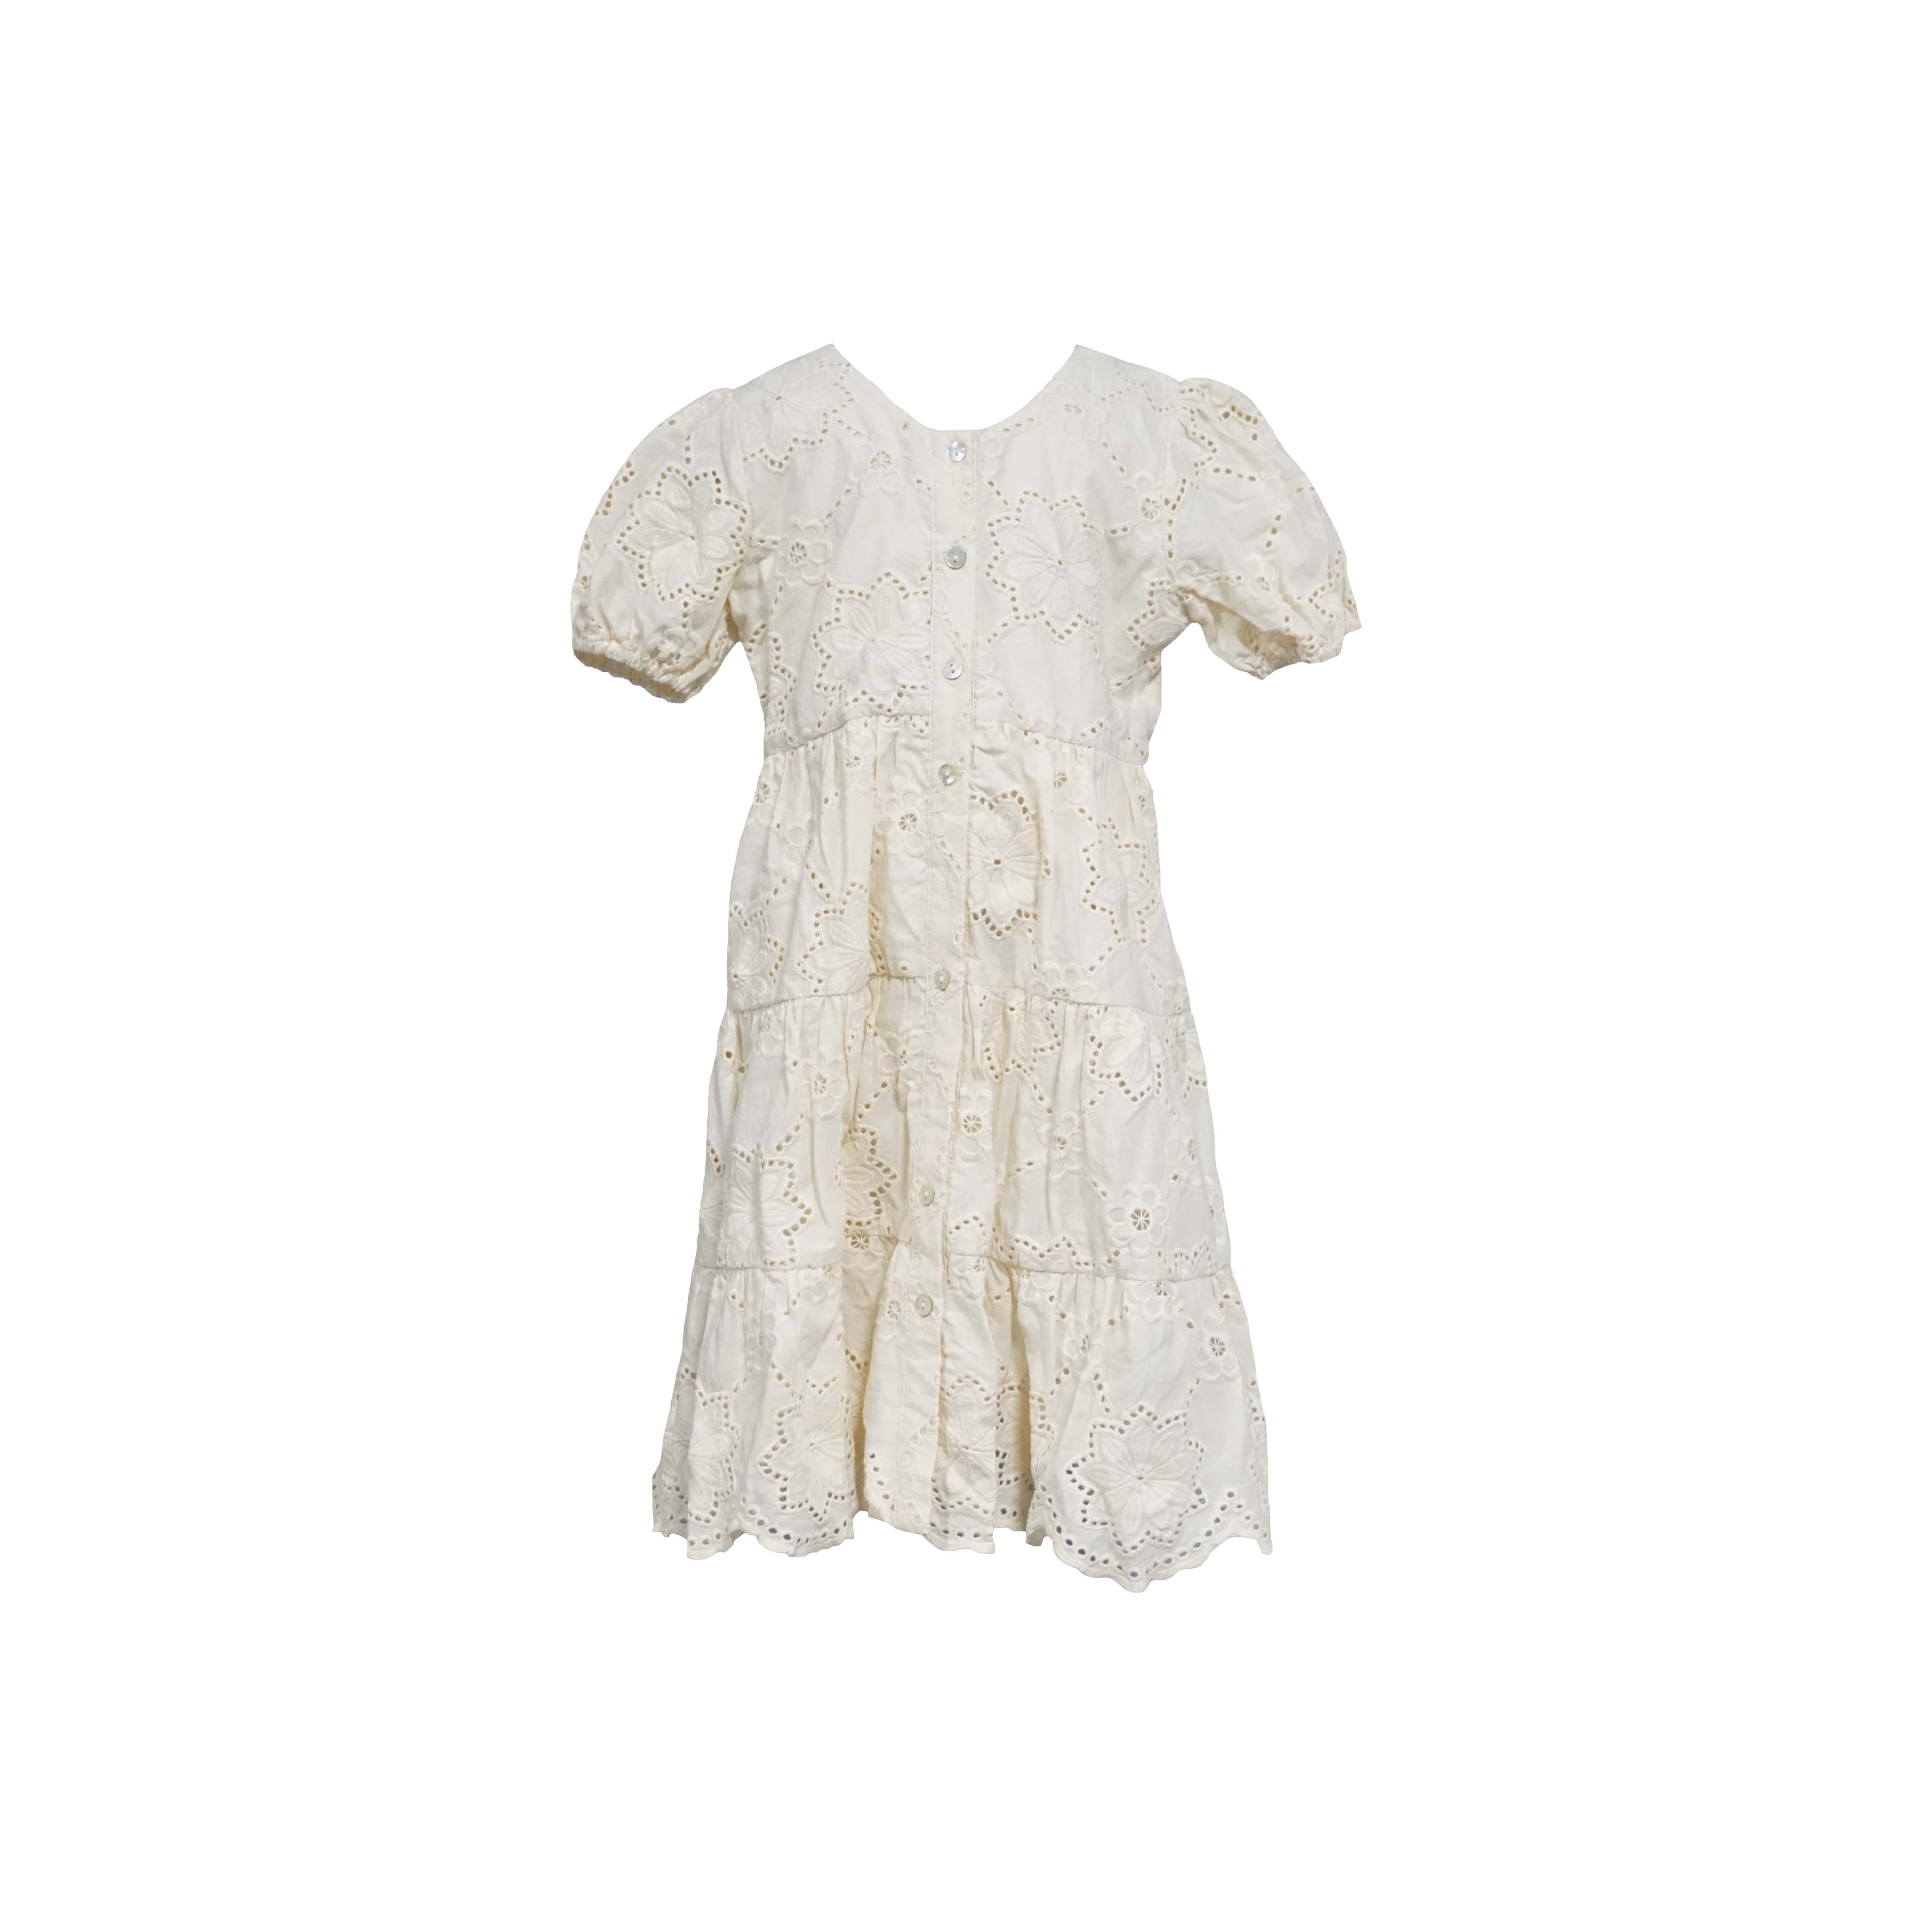 Vestido infantil de algodón con escote en V e manga abullonada con botóns bordados